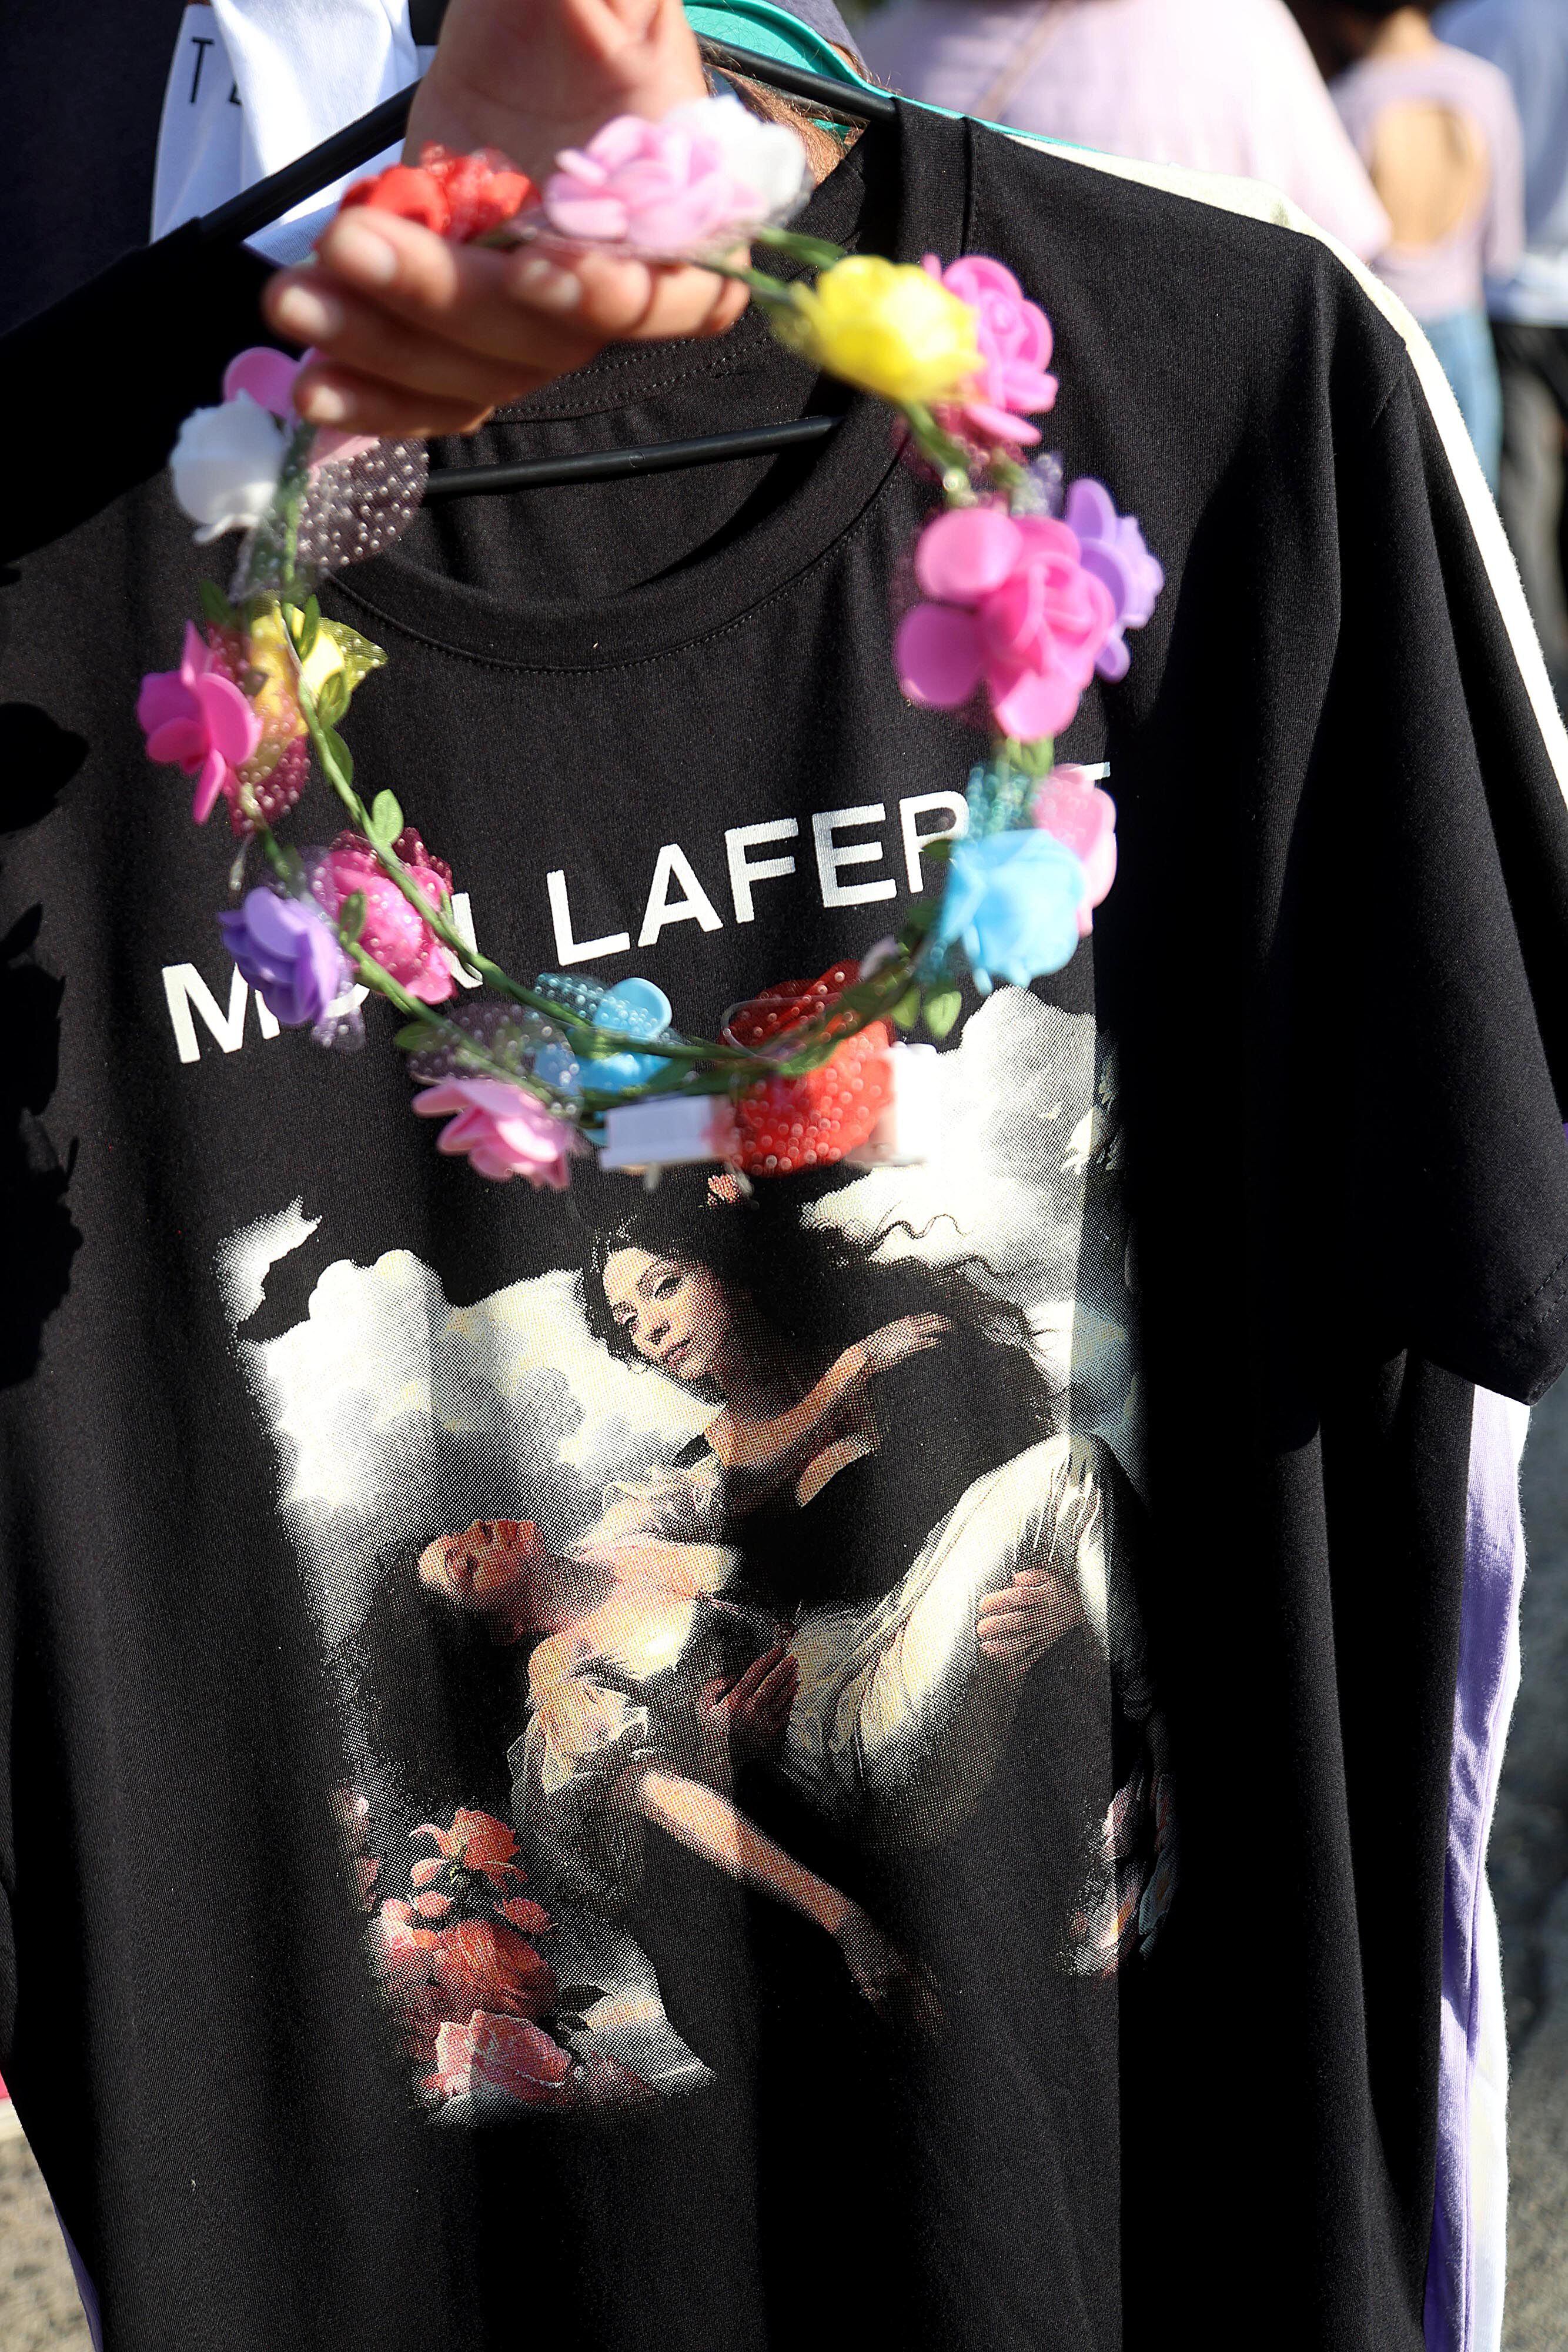 Camisetas con diferentes diseños fueron parte de los recuerdos que los vendedores ofrecieron durante la previa del concierto de Mon Laferte en Costa Rica.